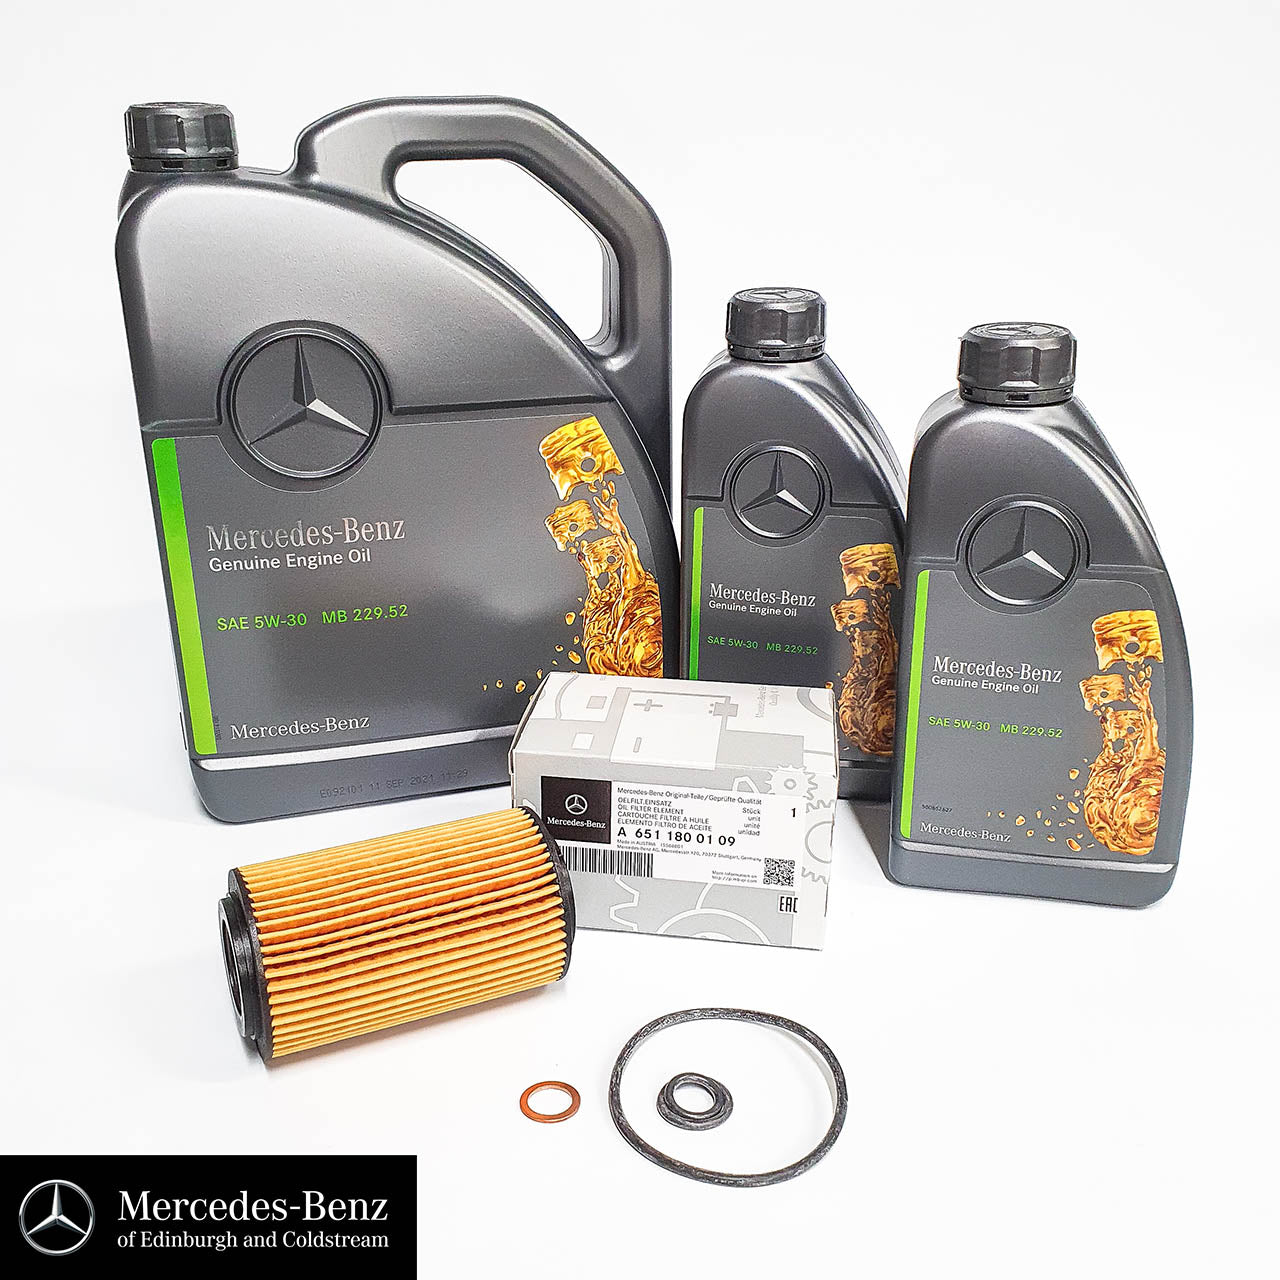 Genuine Mercedes-Benz service kit for OM651 Diesel Engine